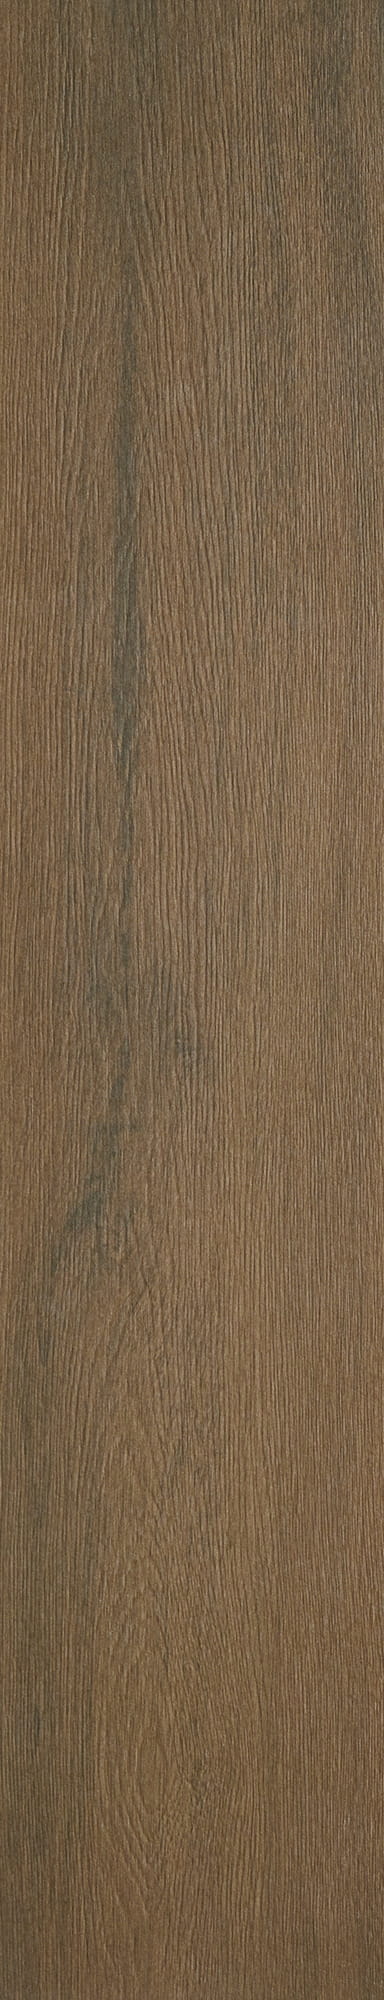 Timber Brown 20x100